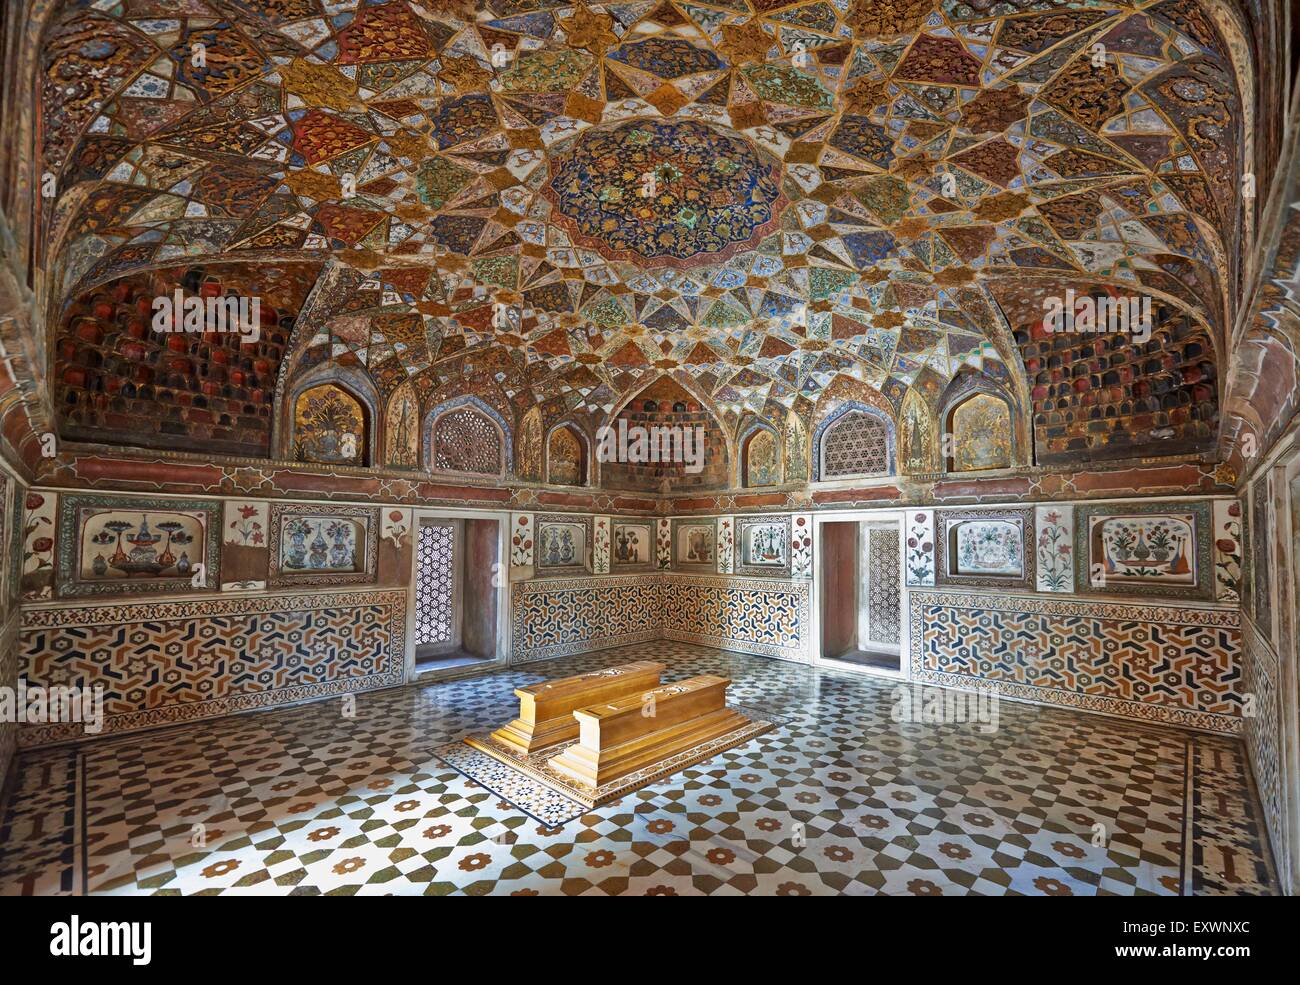 Innere des Mausoleums von Etimad-Ud-Daulah, Agra, Uttar Pradesh, Indien Stockfoto